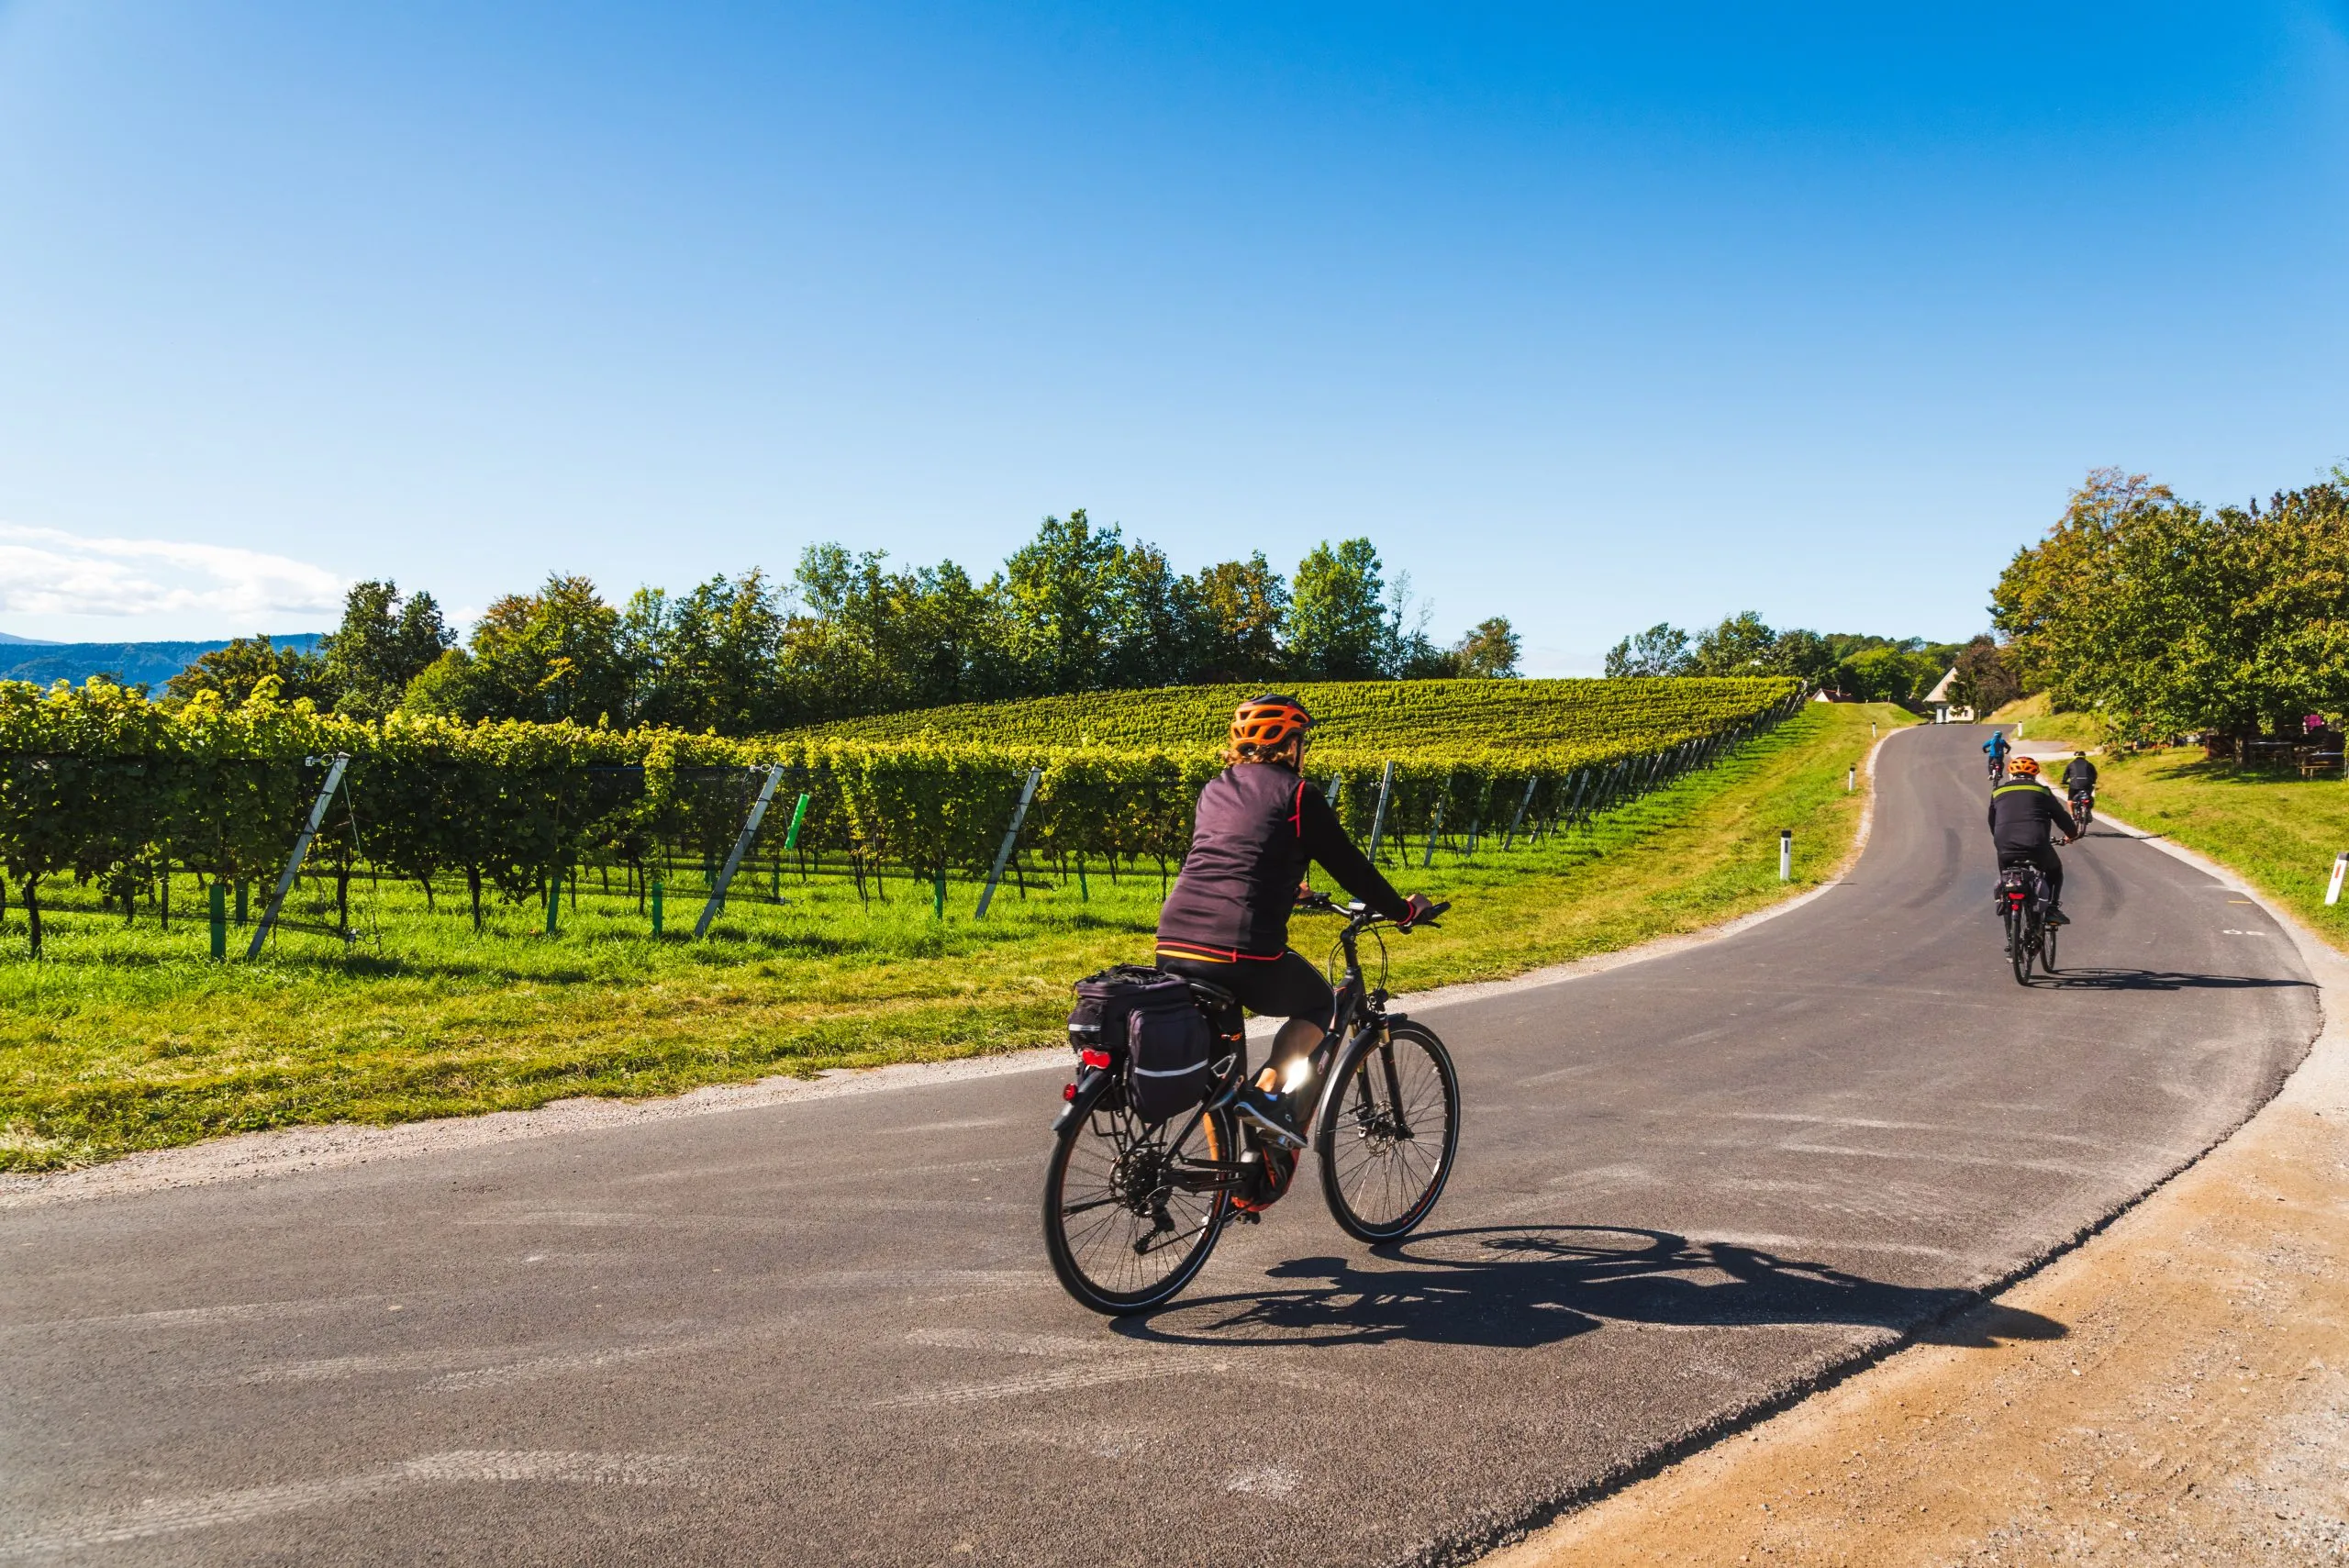 Syklister på vinruten, som går langs grensen mellom Austra og Slovenia med vinranker om høsten.